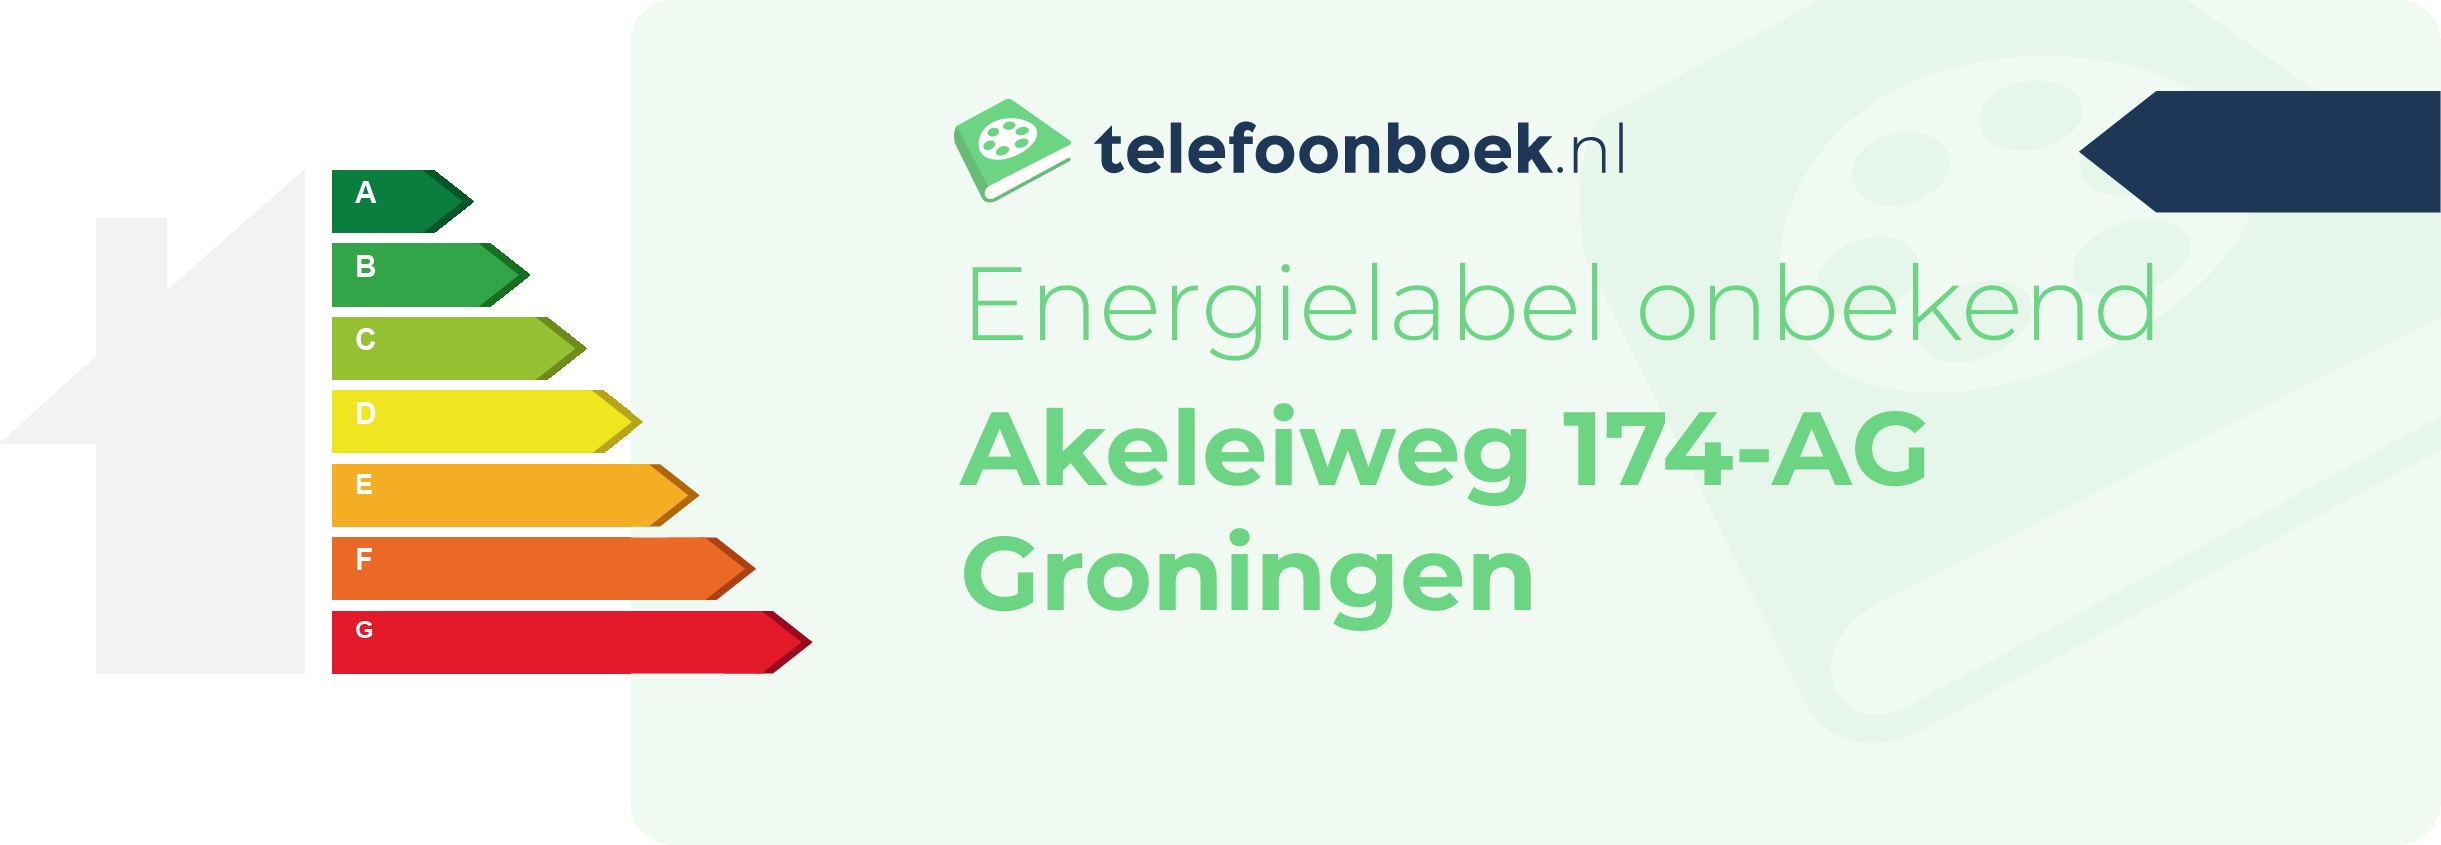 Energielabel Akeleiweg 174-AG Groningen